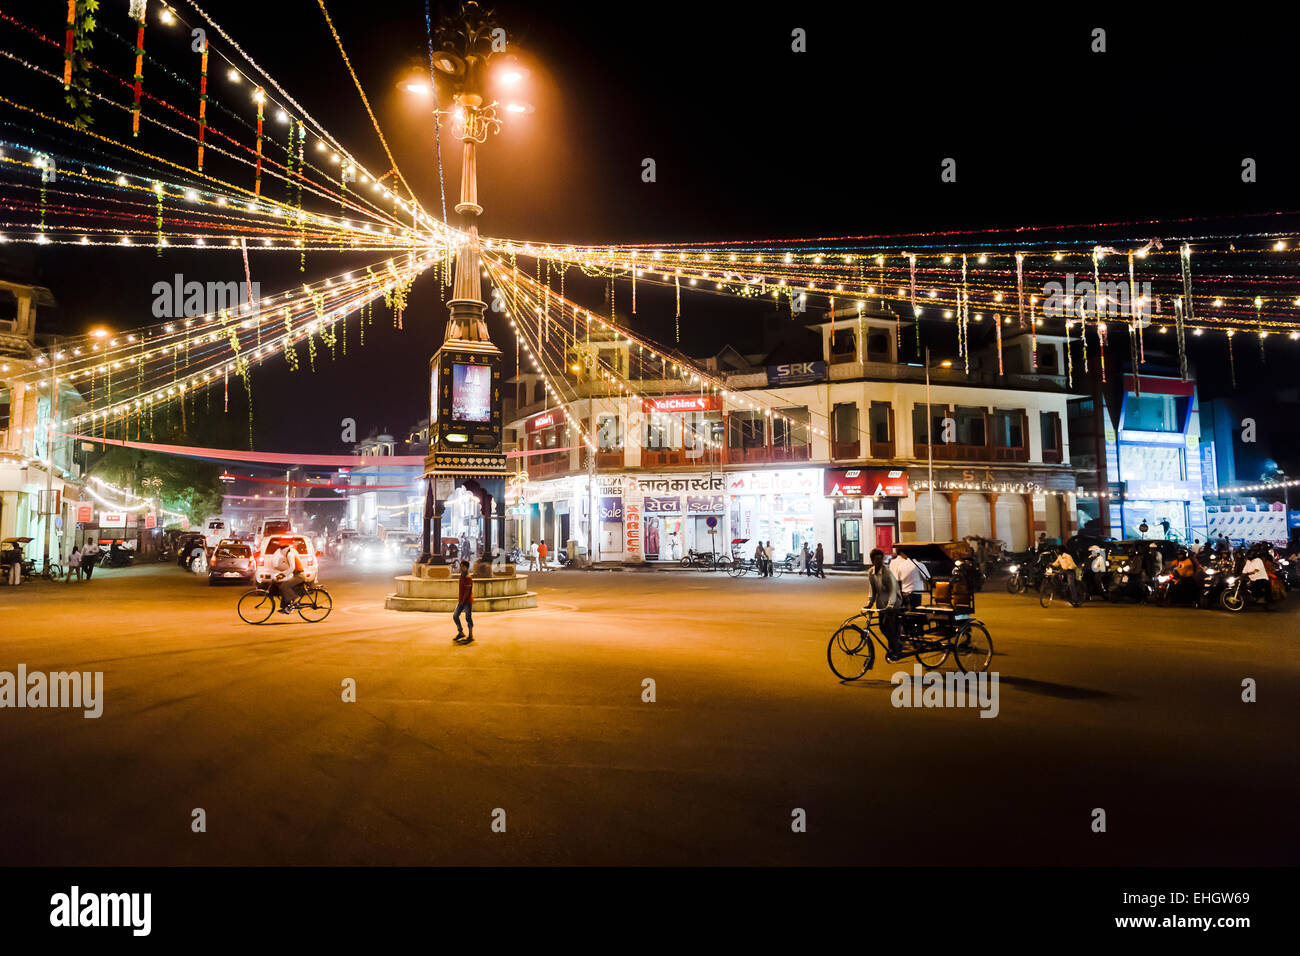 Un rond-point de nuit décoré avec des lumières pour le festival Diwali à Jaipur. Banque D'Images